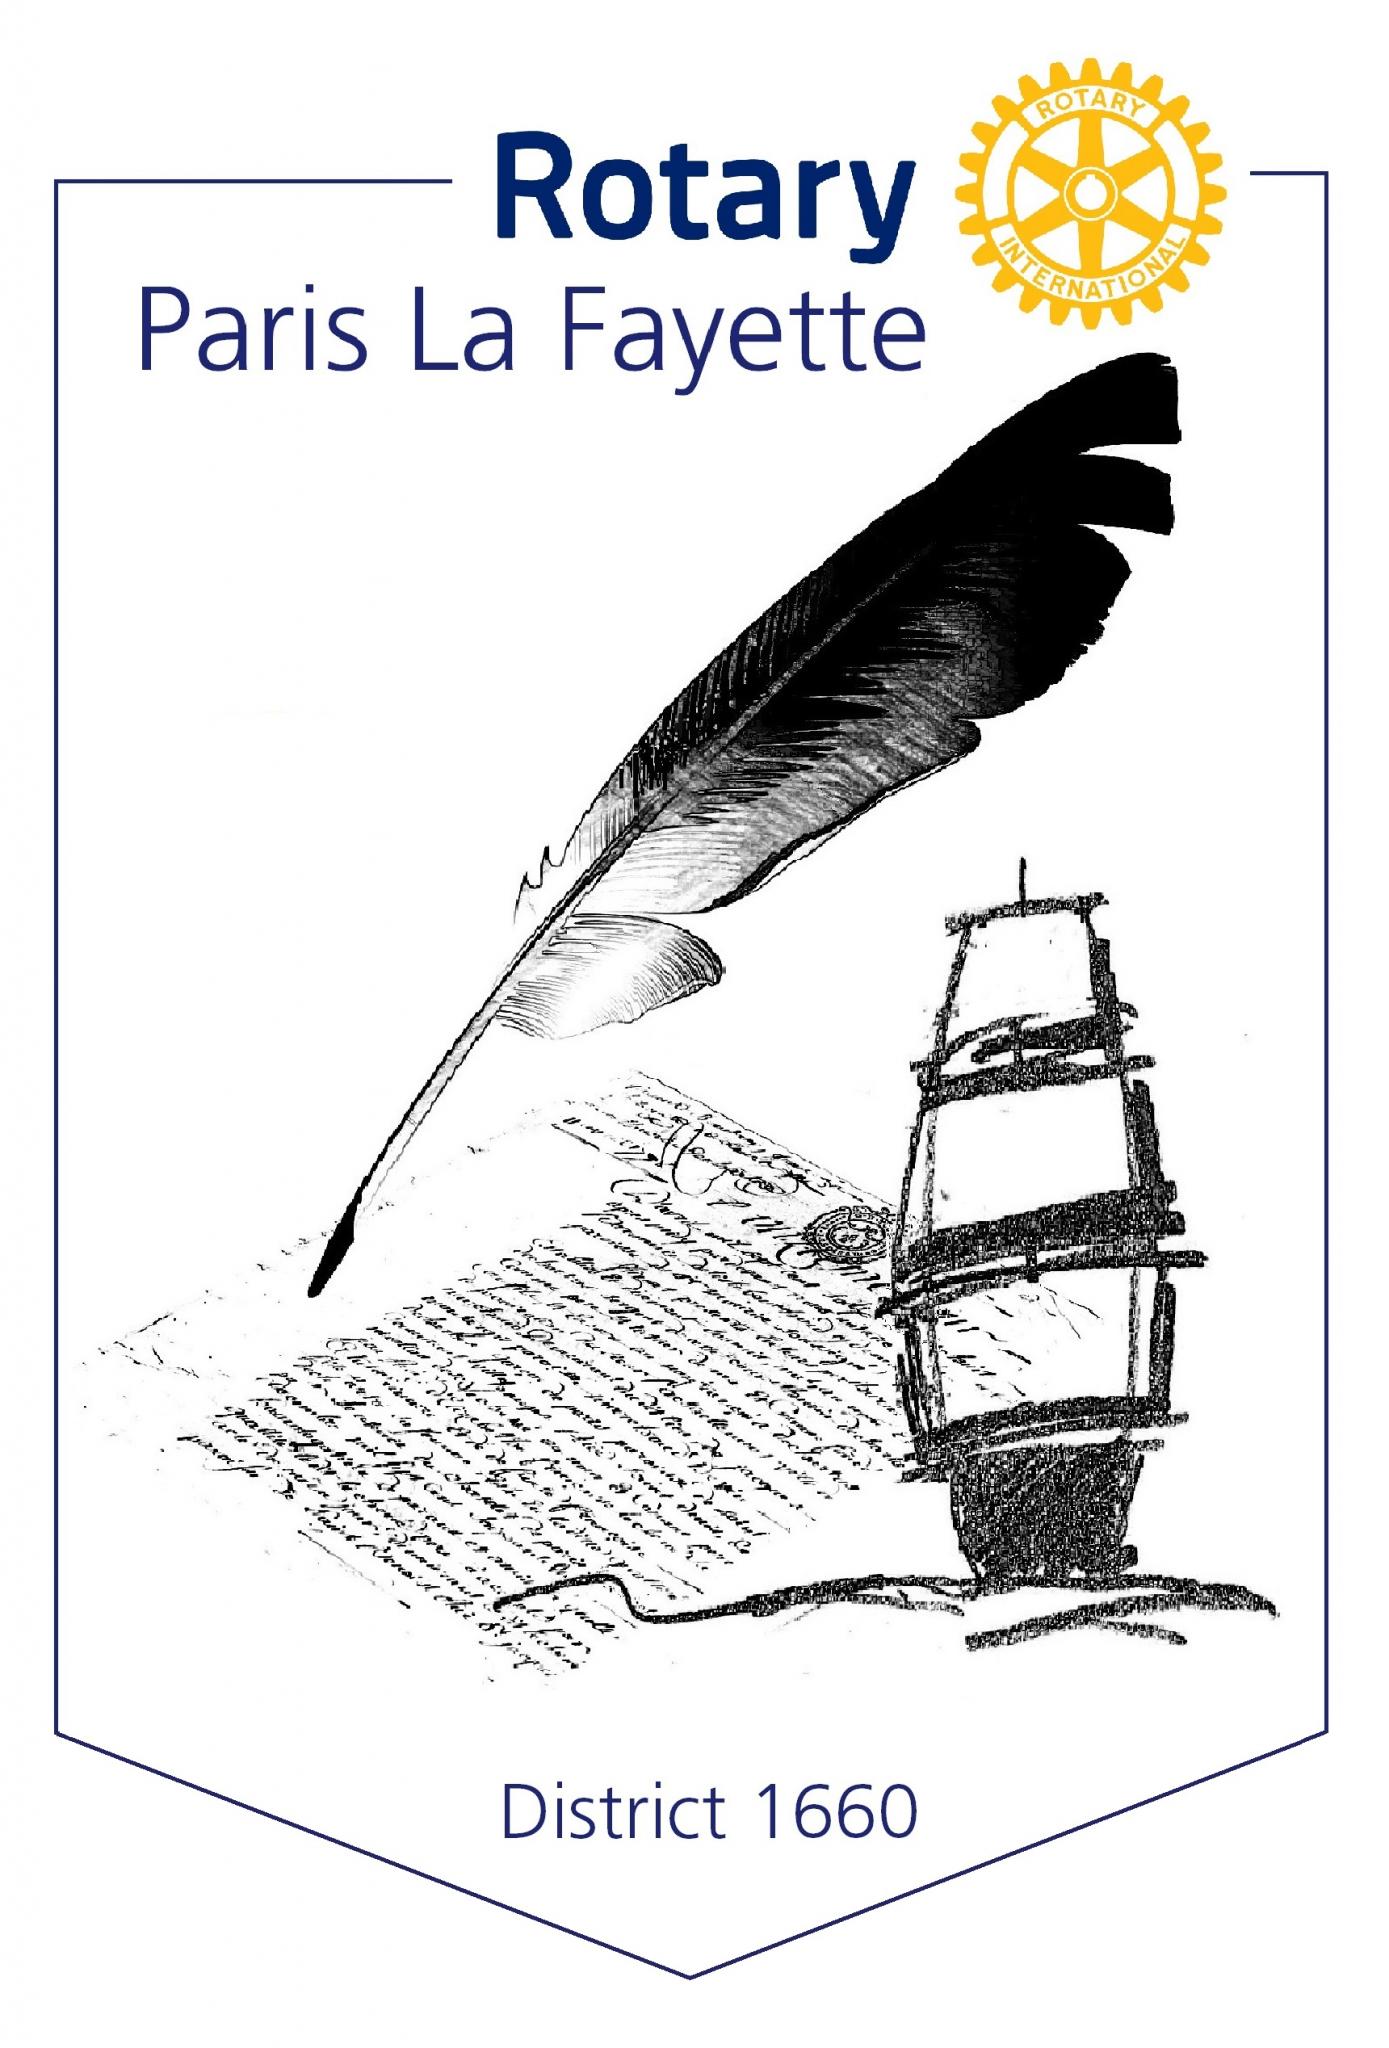 LOGO Rotary Paris La Fayette